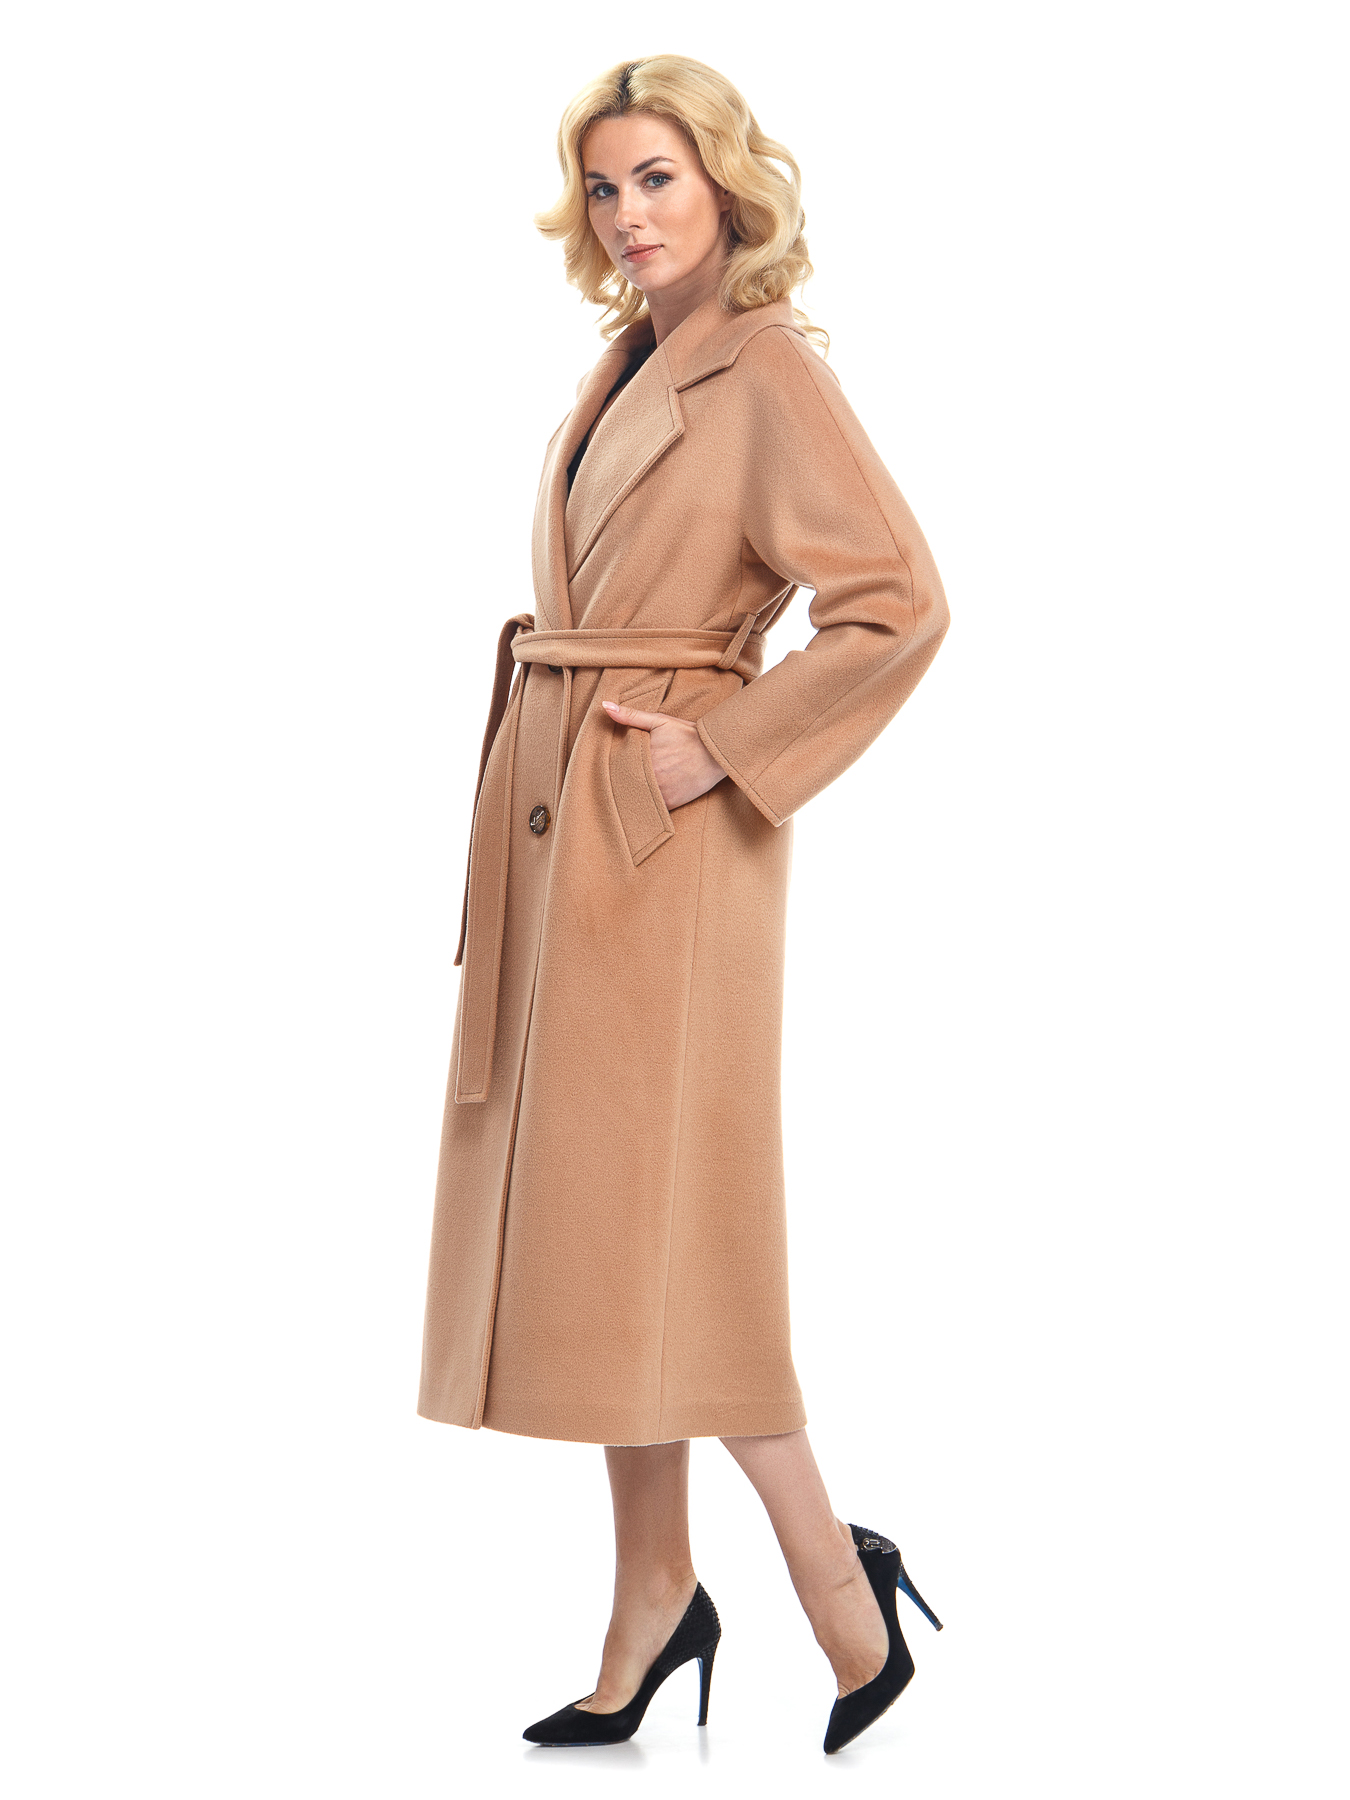 Женское текстильное пальто с воротником